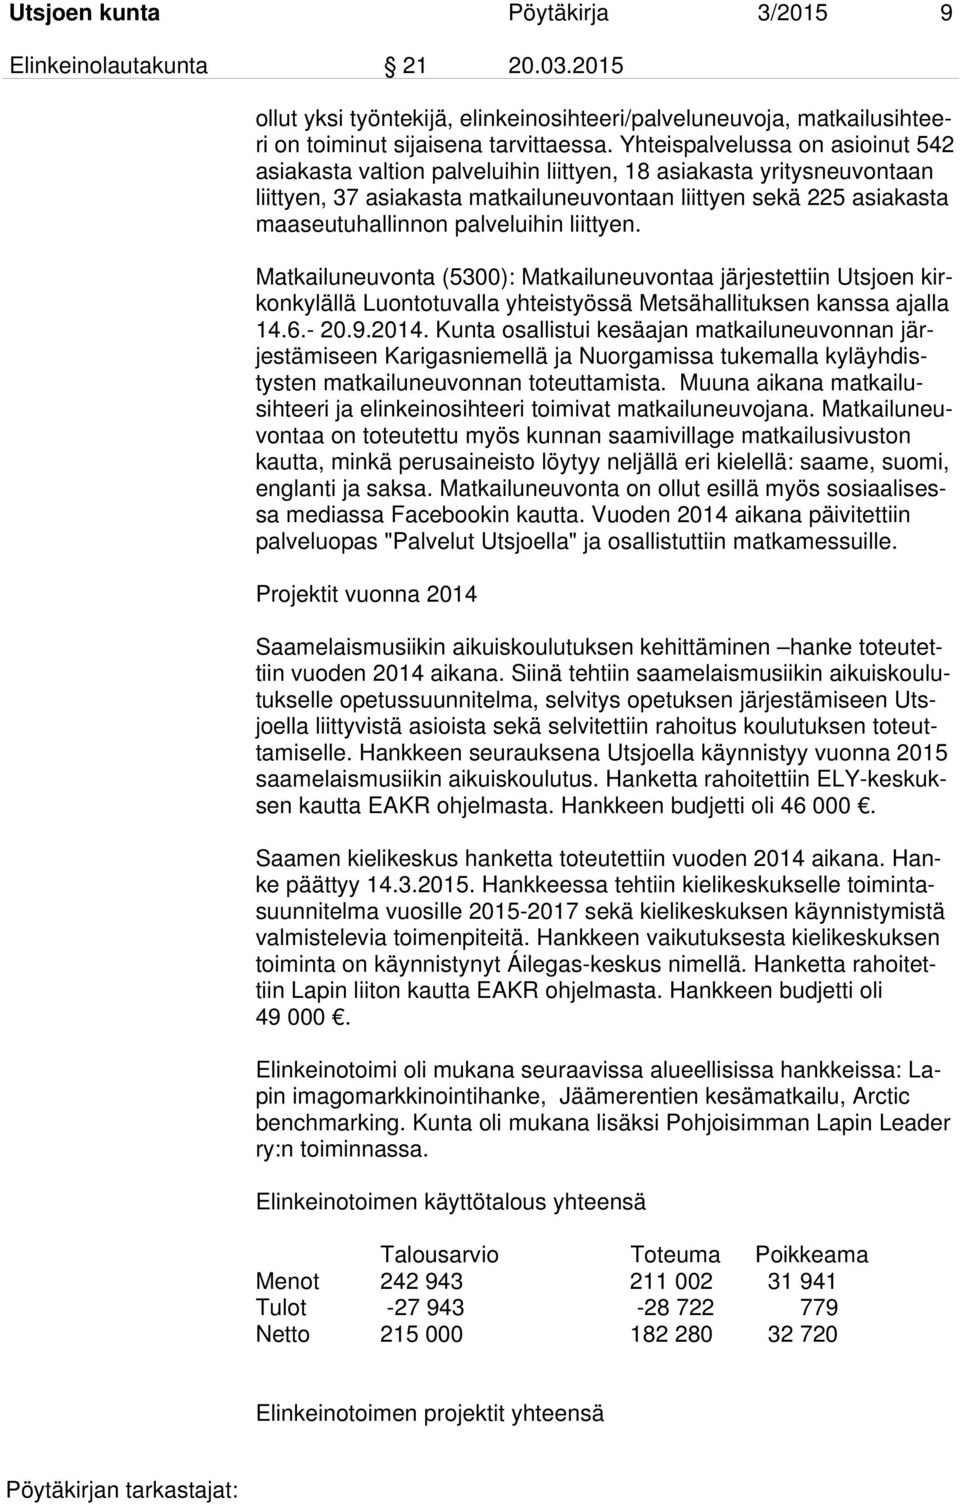 palveluihin liittyen. Matkailuneuvonta (5300): Matkailuneuvontaa järjestettiin Utsjoen kirkonkylällä Luontotuvalla yhteistyössä Metsähallituksen kanssa ajalla 14.6.- 20.9.2014.